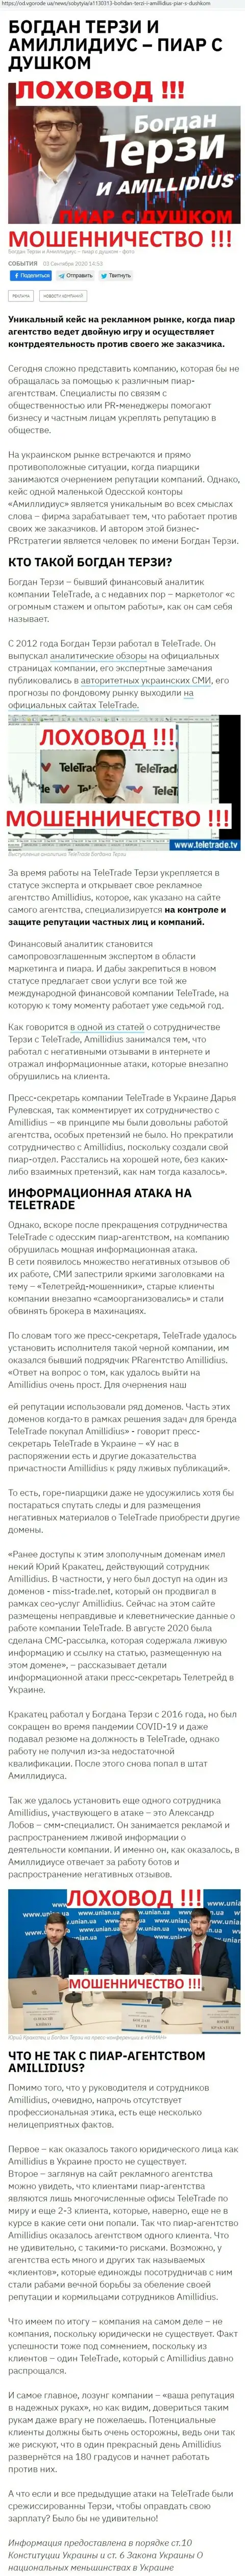 Богдан Терзи сомнительный партнер, сведения со слов бывшего сотрудника пиар фирмы Амиллидиус Ком